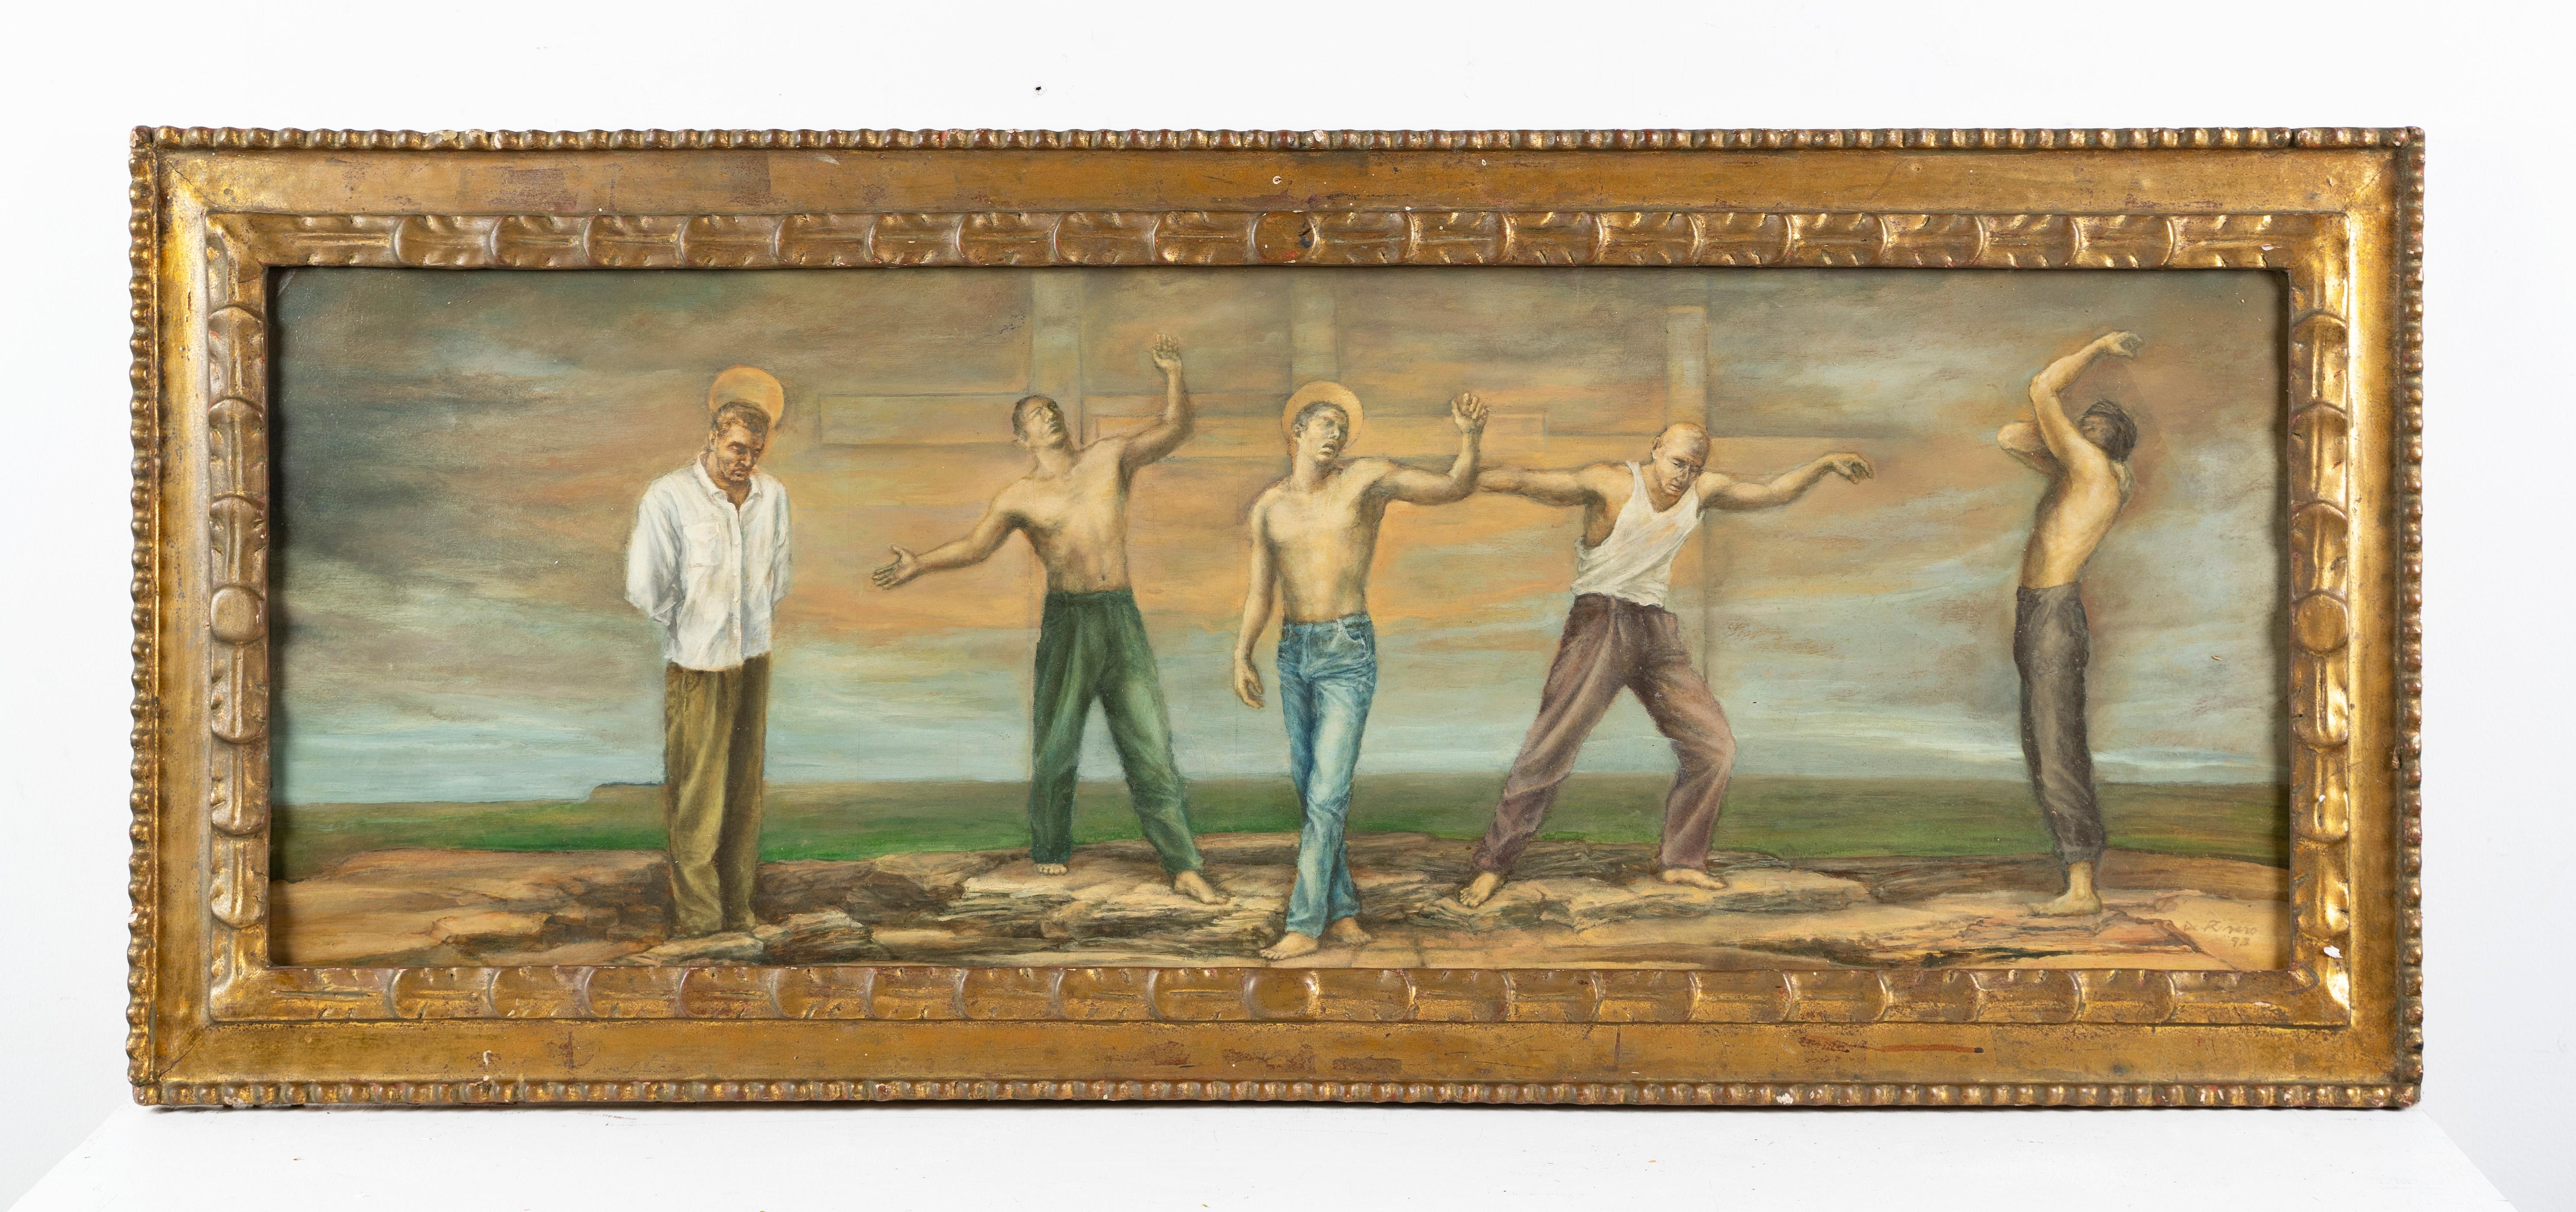 Großes signiertes surreales nacktes männliches Porträt, symbolistische Landschaft, gerahmtes Ölgemälde (Surrealismus), Painting, von Unknown